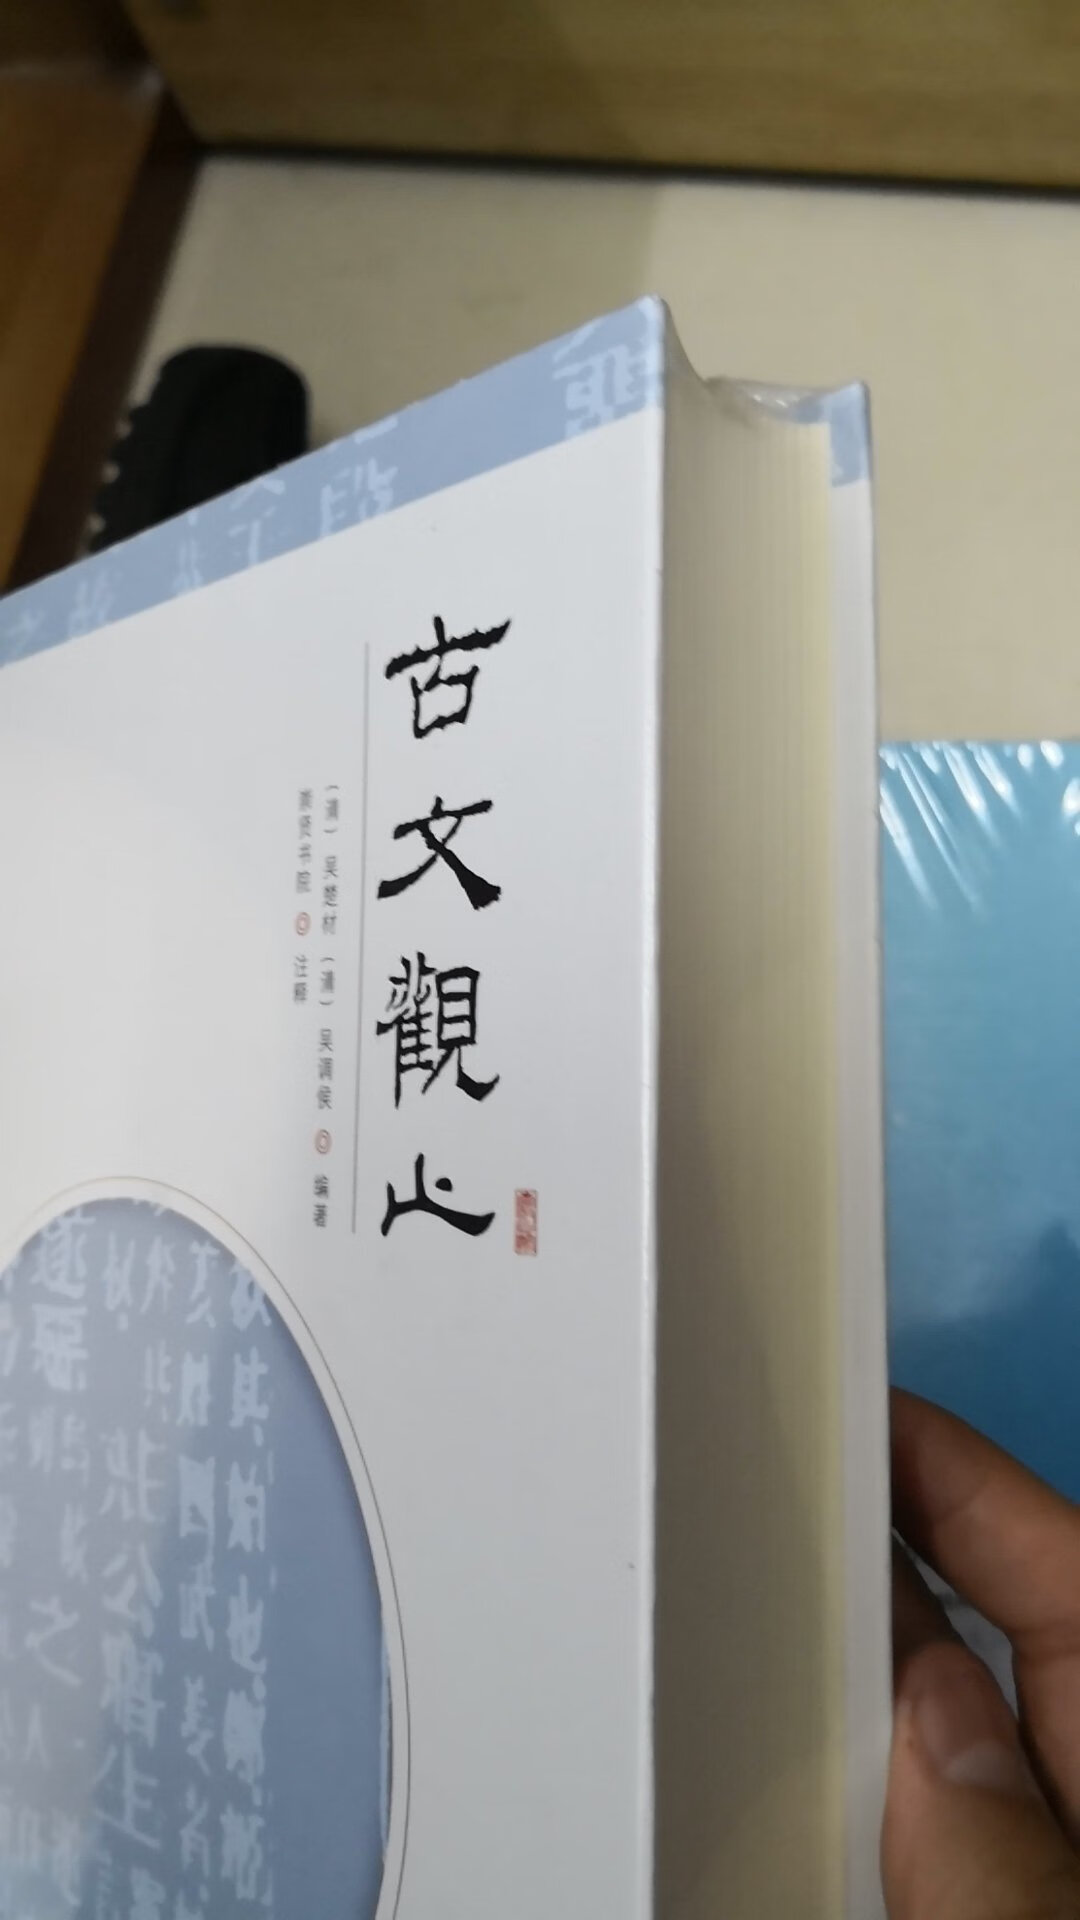 早就有所耳闻的一本书。中华传统文化博大精深。